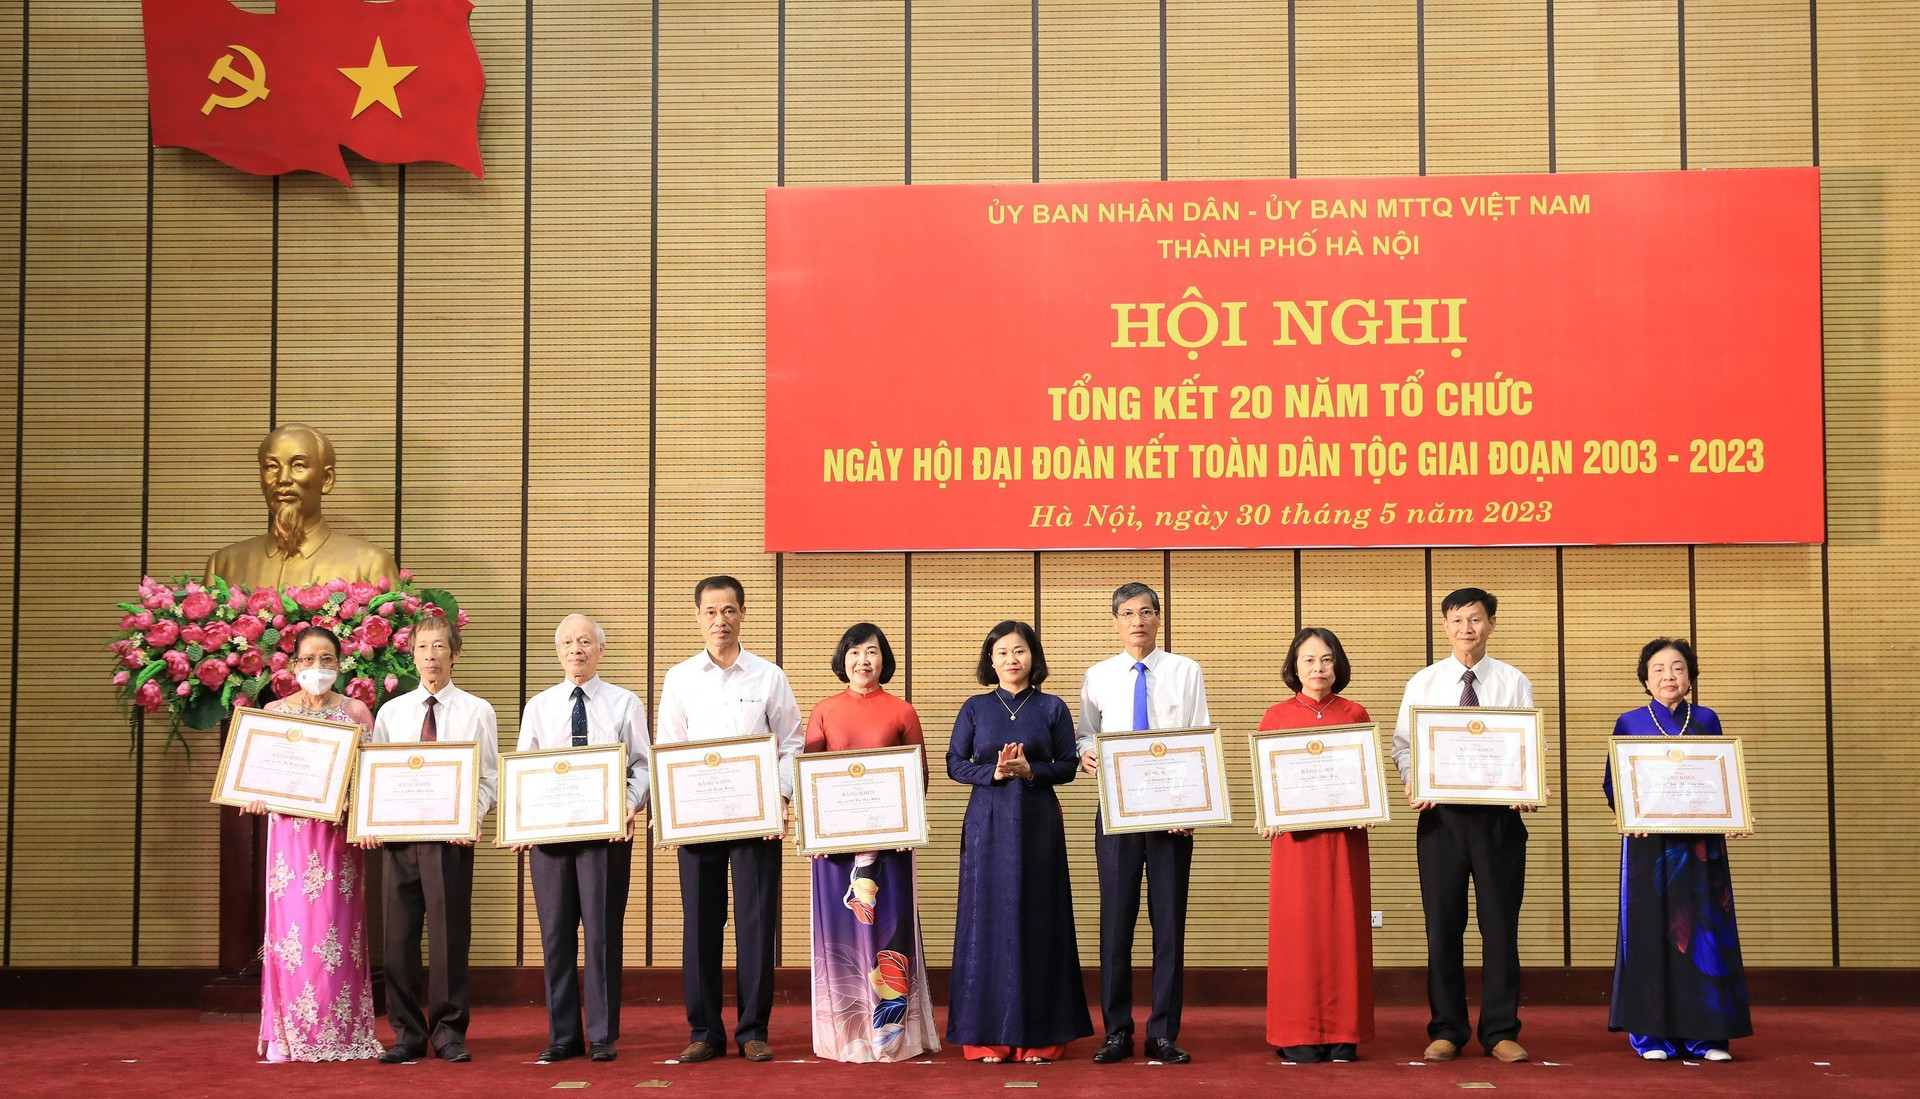 Bà Nguyễn Thị Tuyến, Phó Bí thư Thường trực Thành ủy Hà Nội tặng bằng khen cho các tập thể, cá nhân xuất sắc.